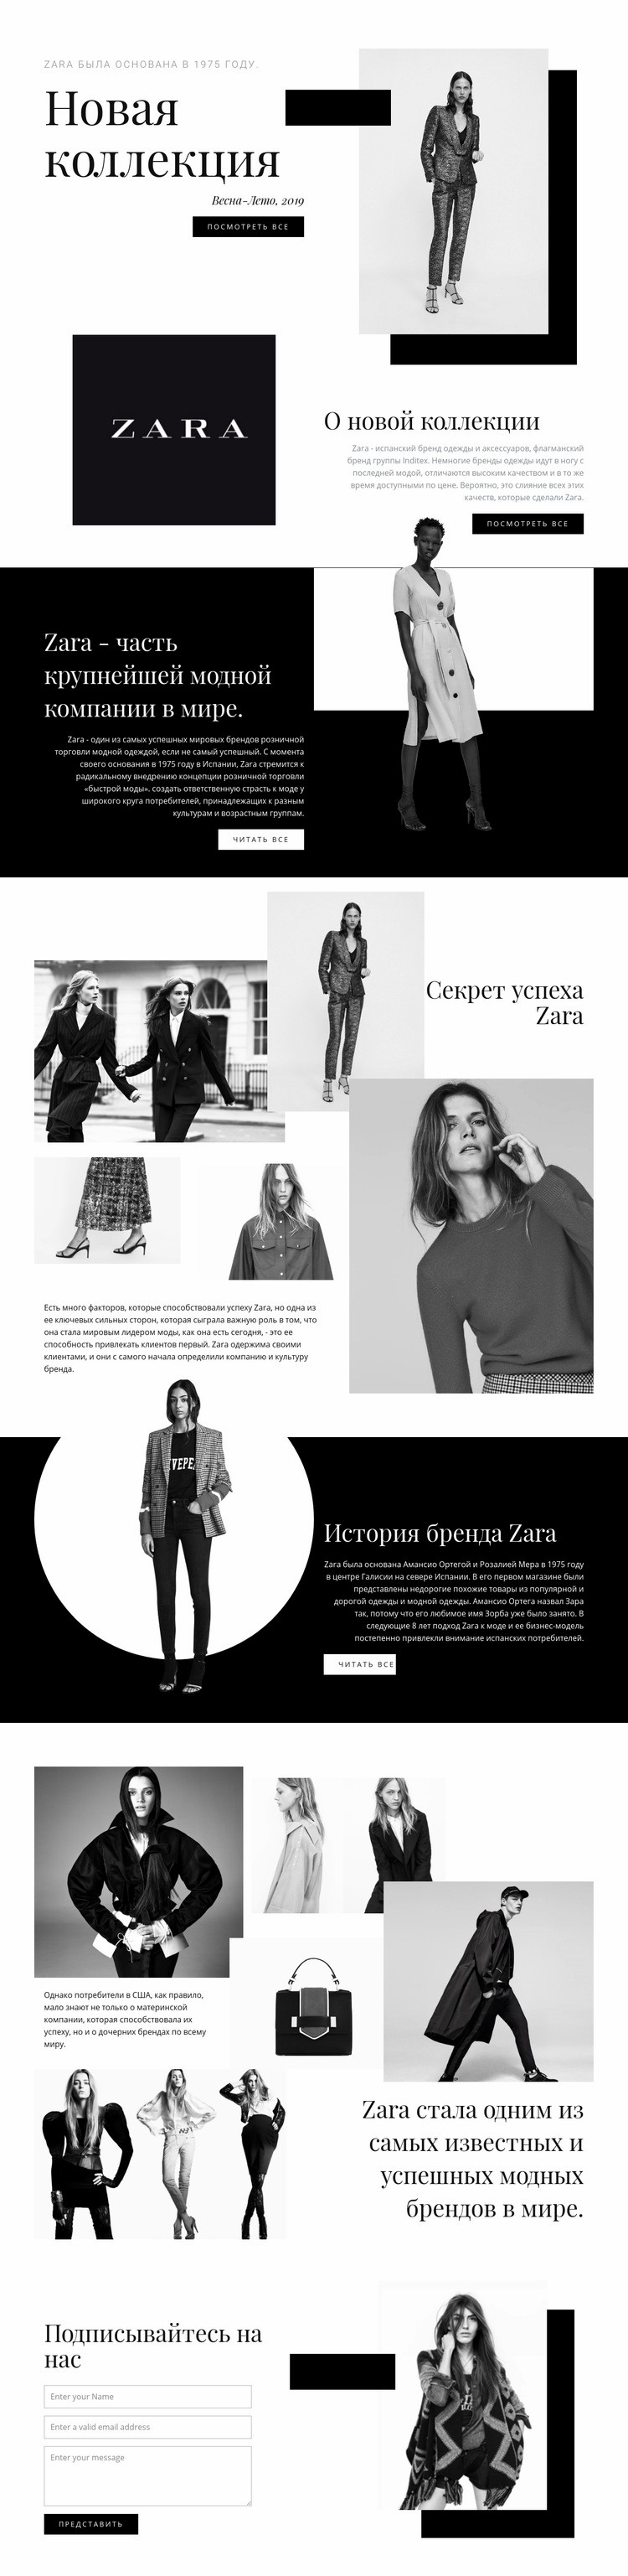 Коллекция Zara HTML5 шаблон